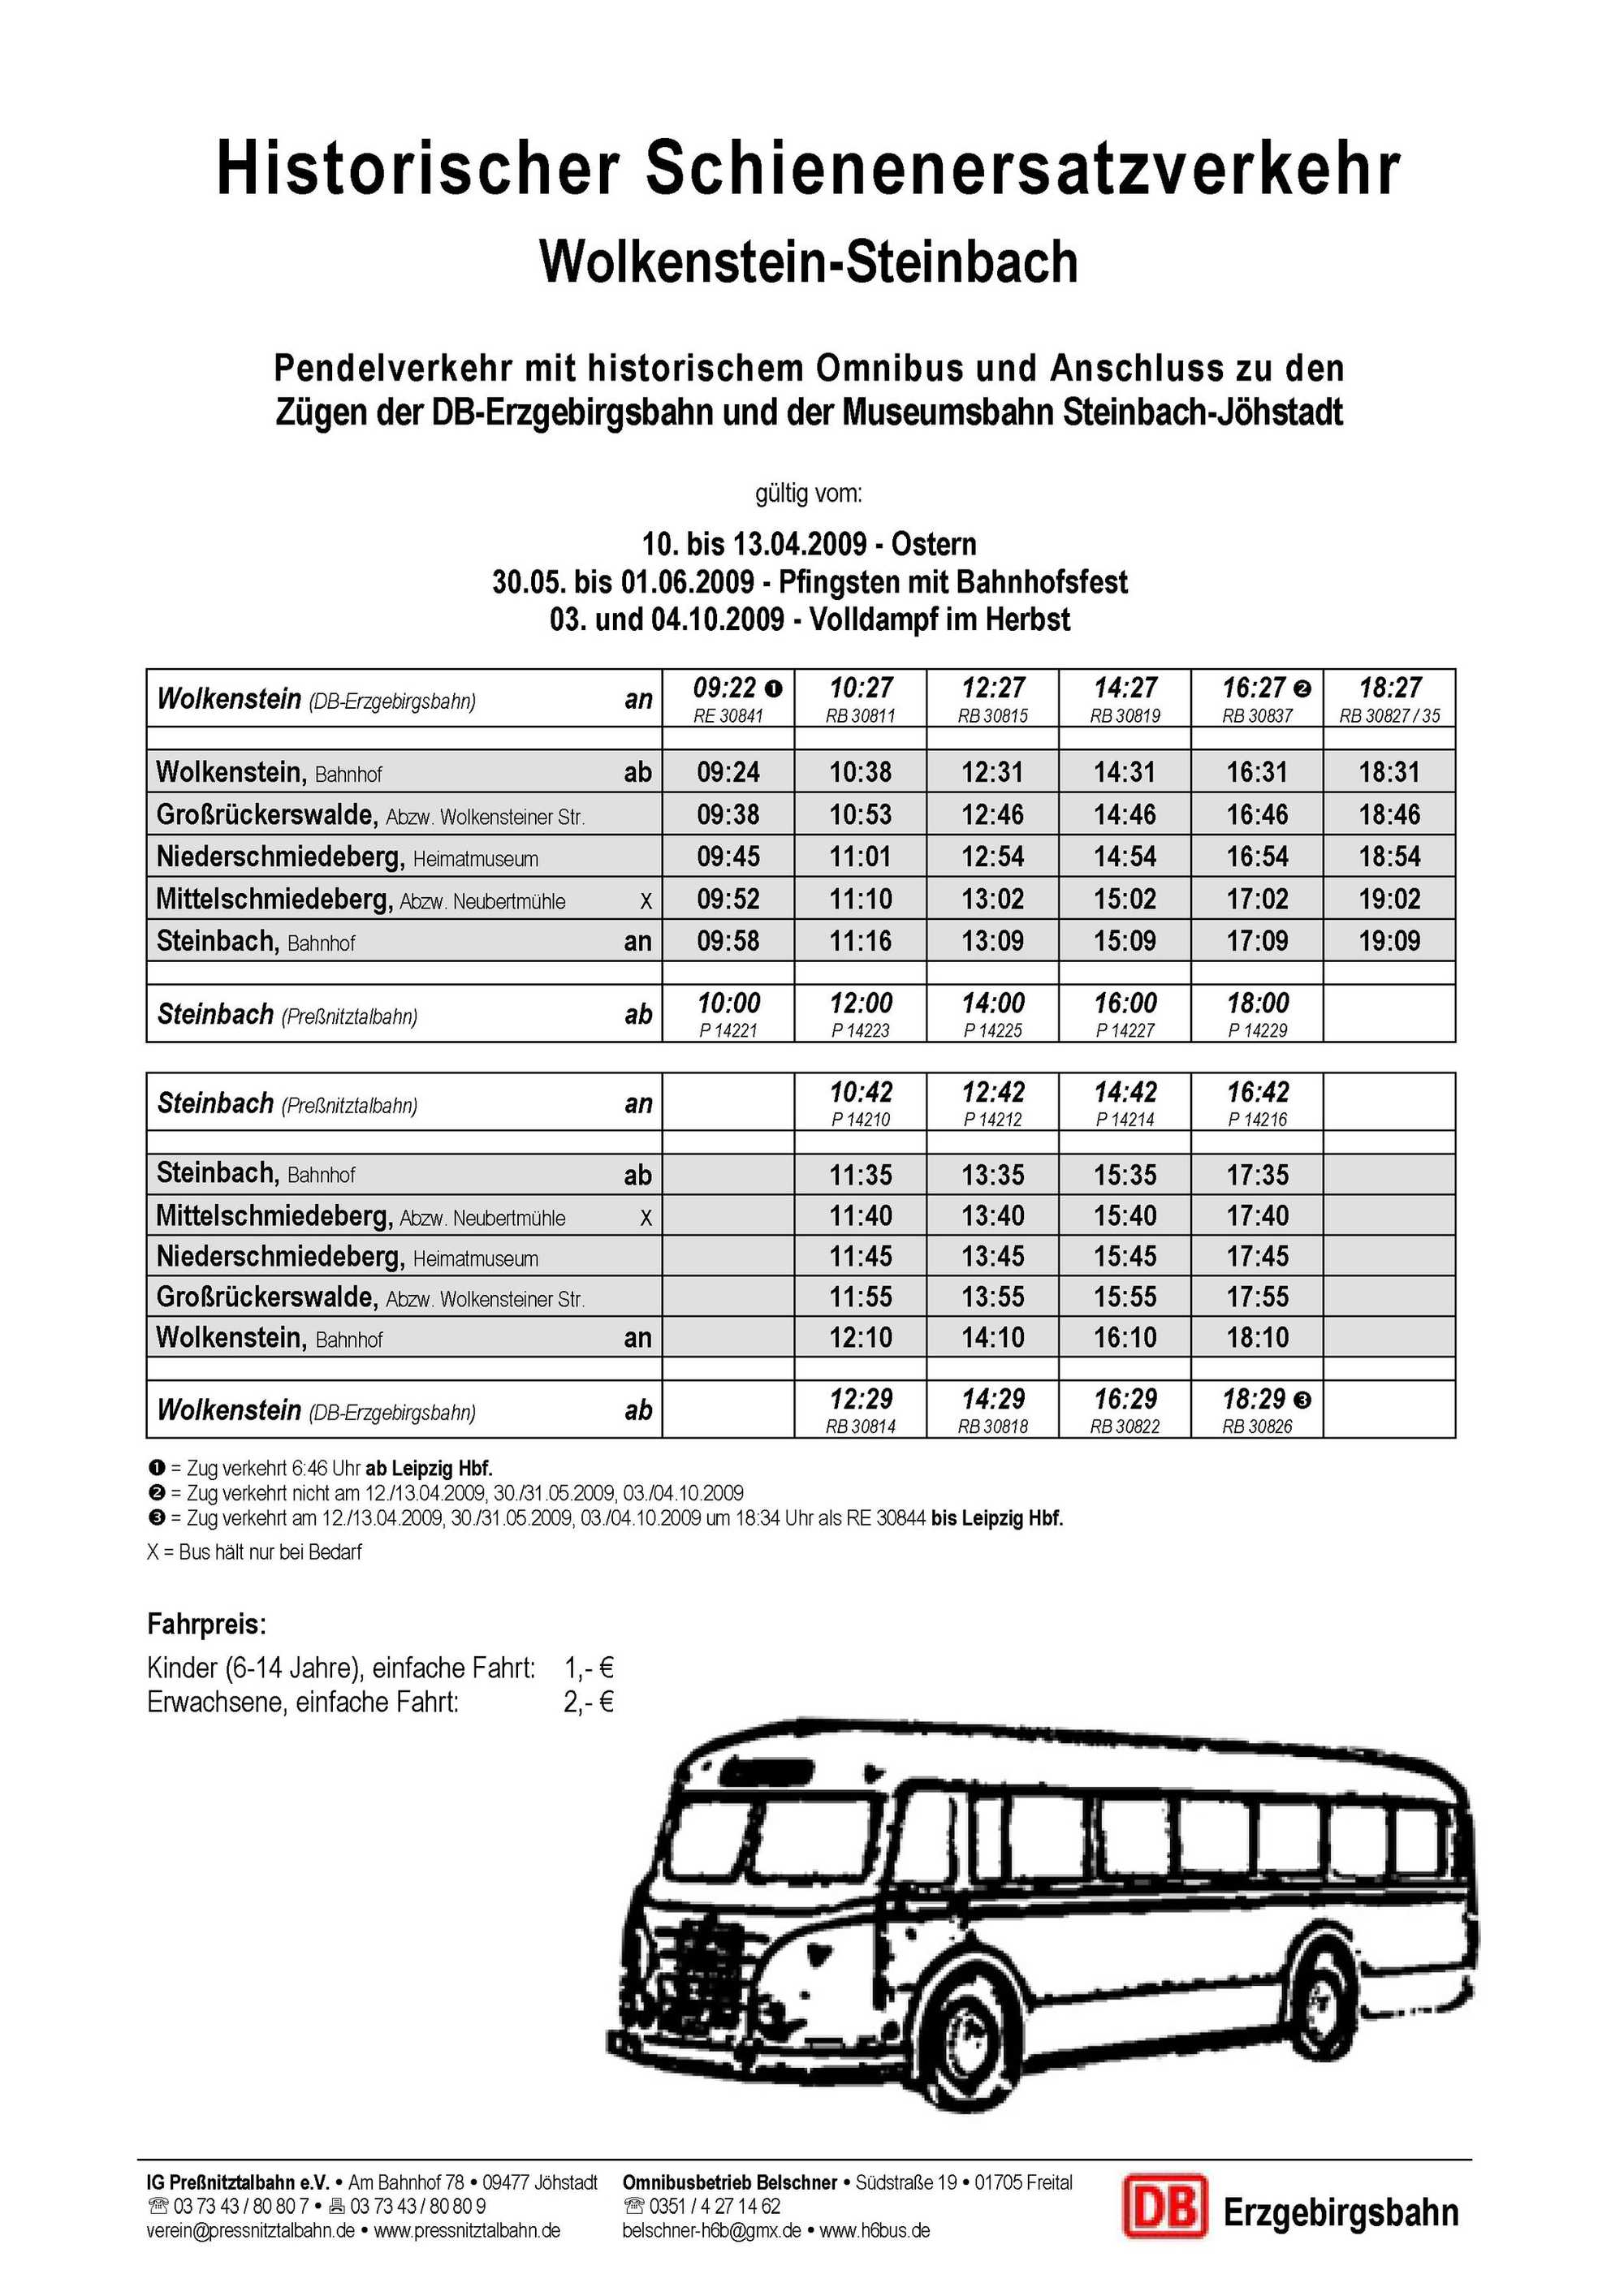 Fahrplan Historischer Schienenersatzverkehr Ostern / Pfingsten / Herbstfest 2009